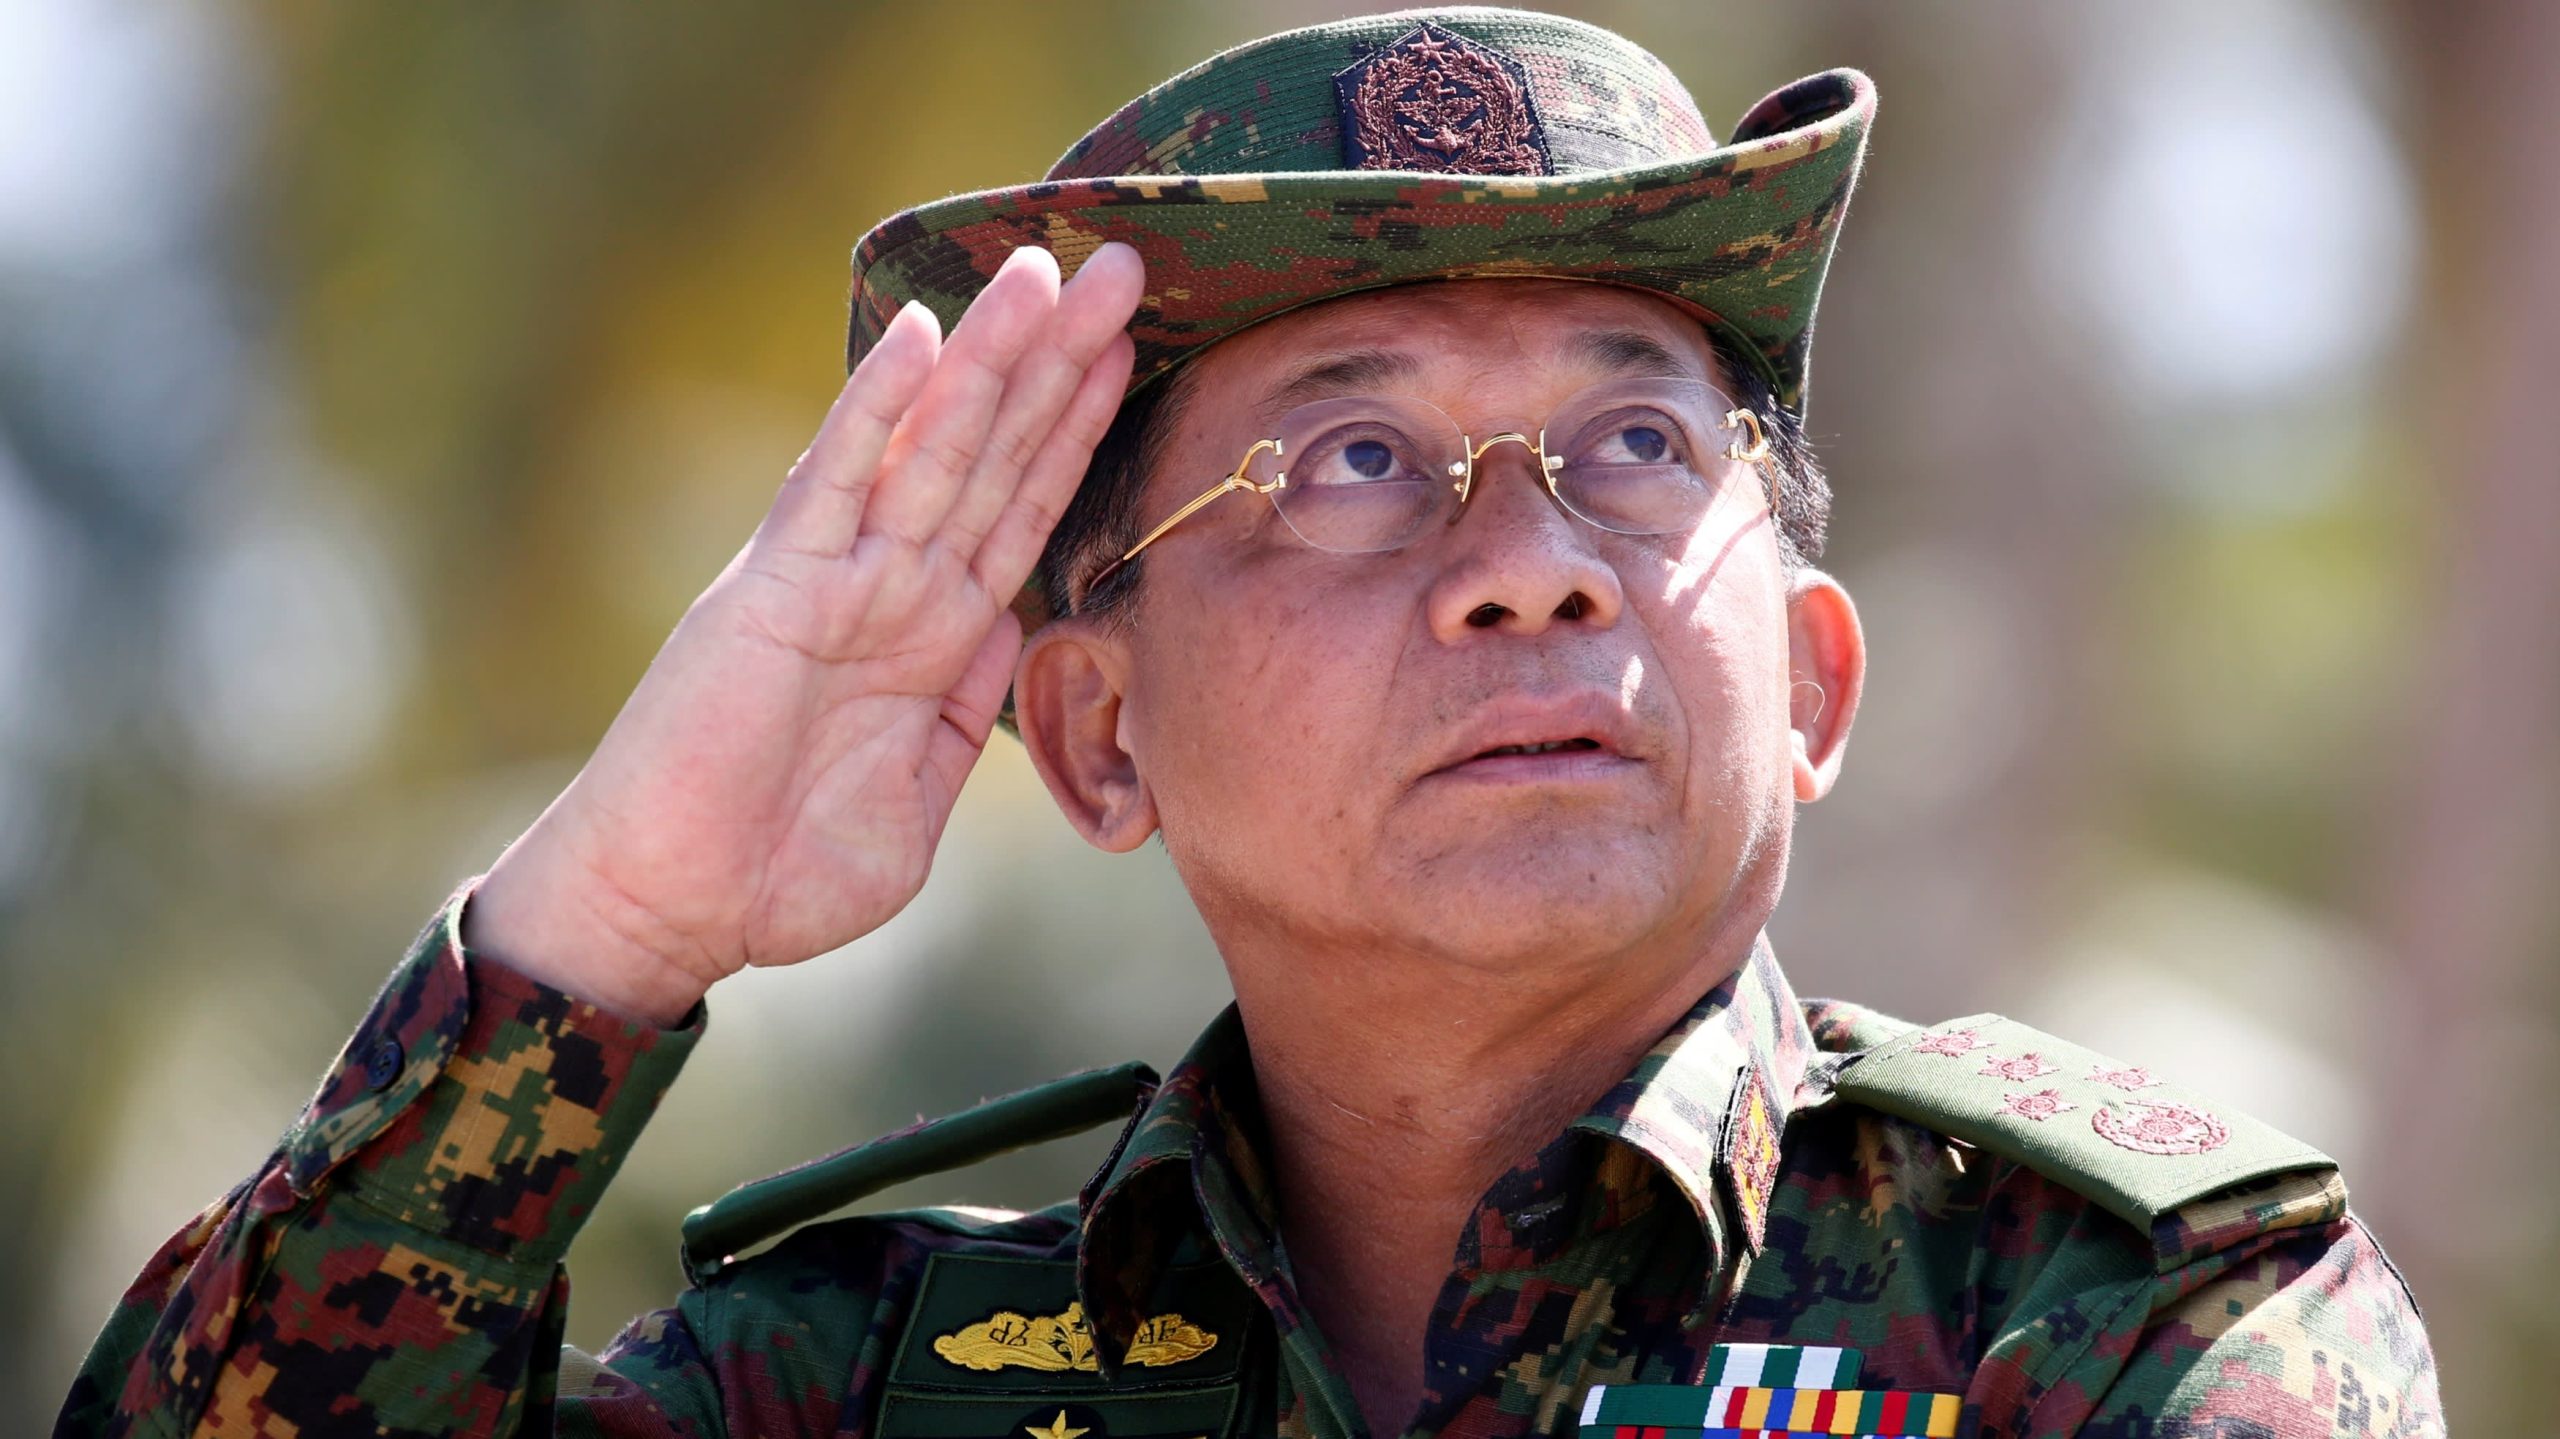 Генерал Мин Аун Хлайн, който през тази година трябваше да се пенсионира, е новият лидер на Мианмар след преврата